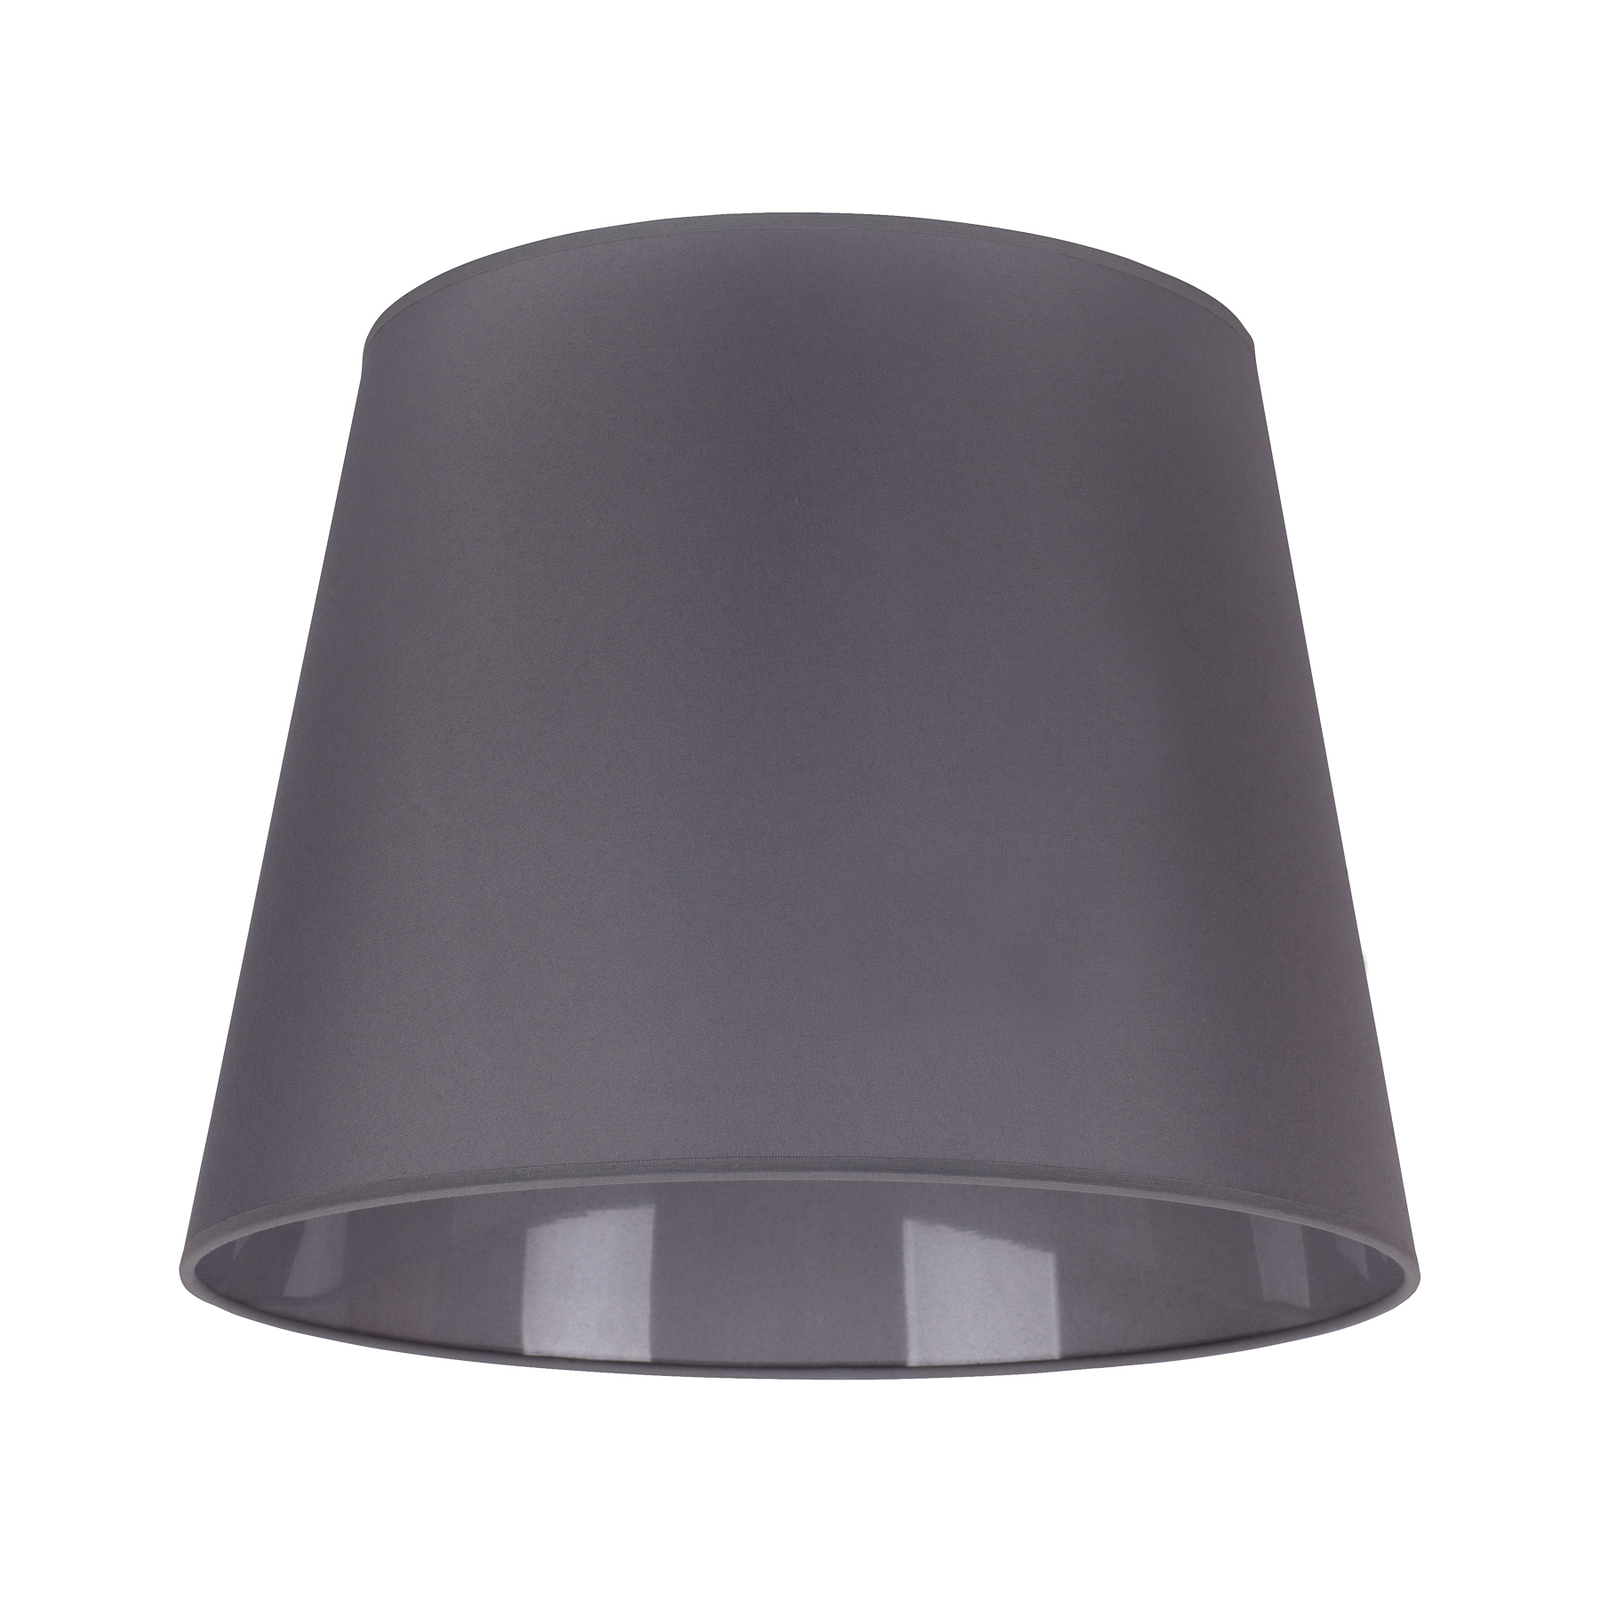 Lampeskjerm Classic L til hengelamper, grå